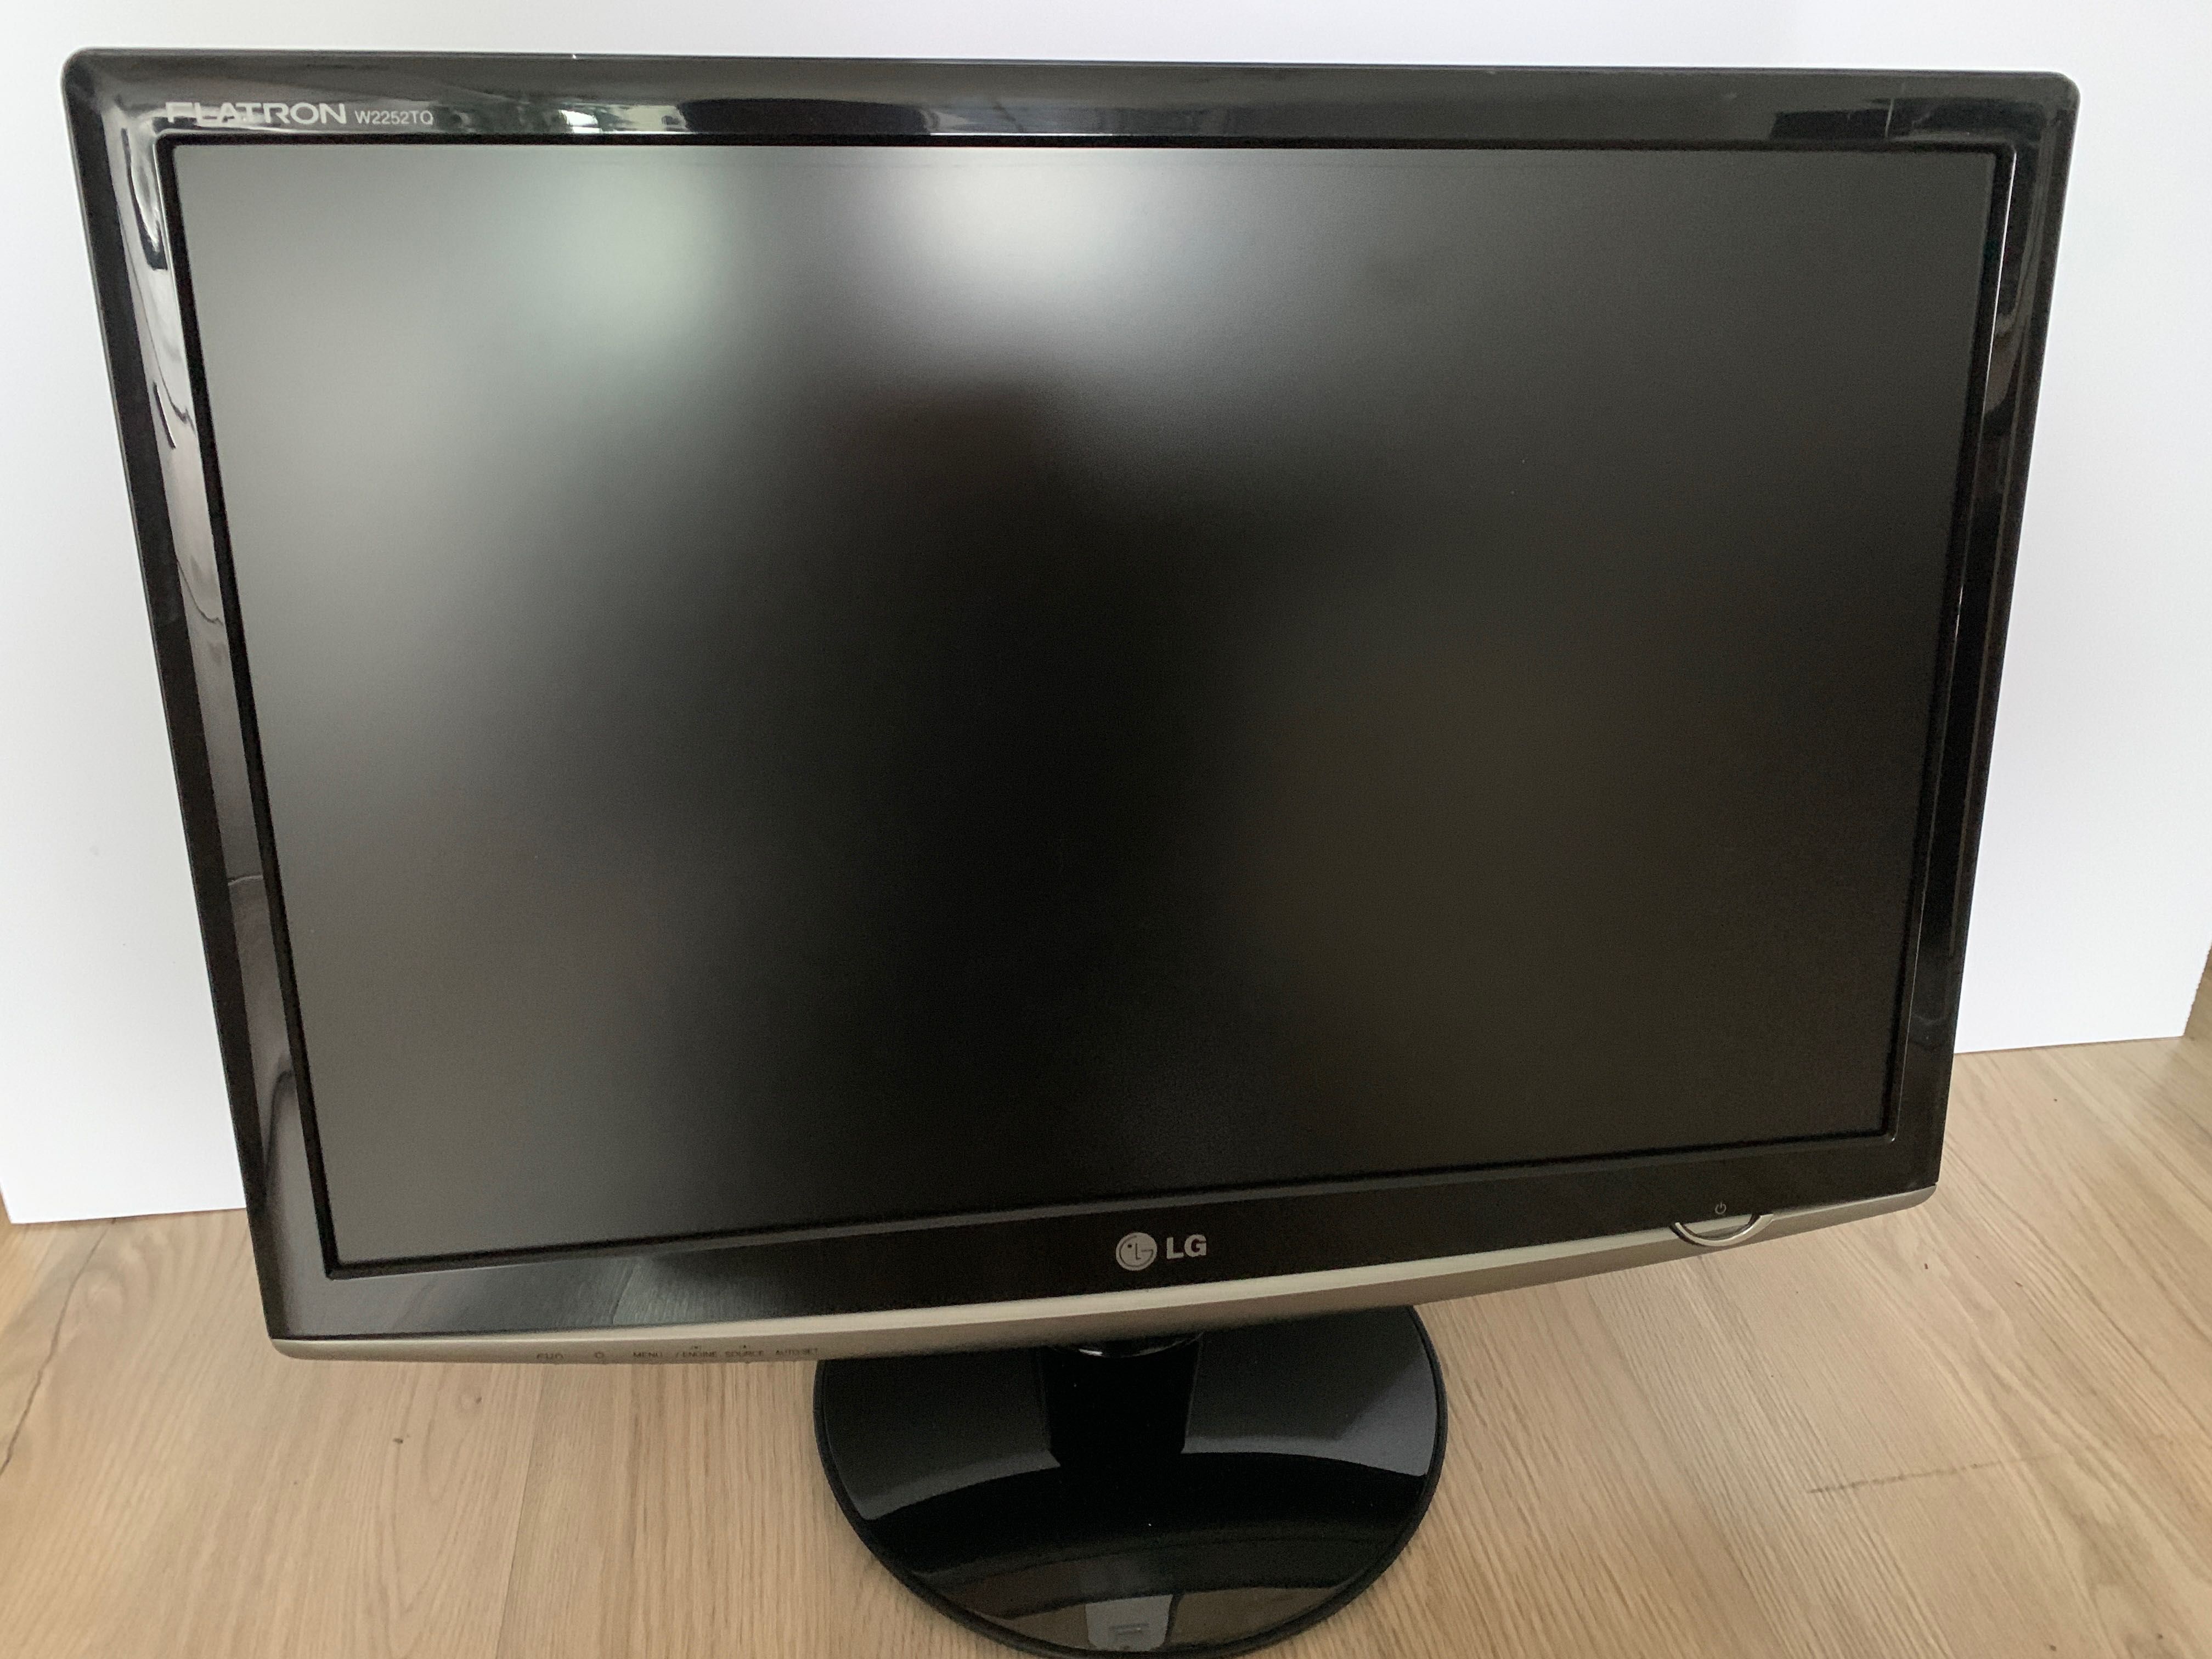 Monitor LG Flatron W2252TQ